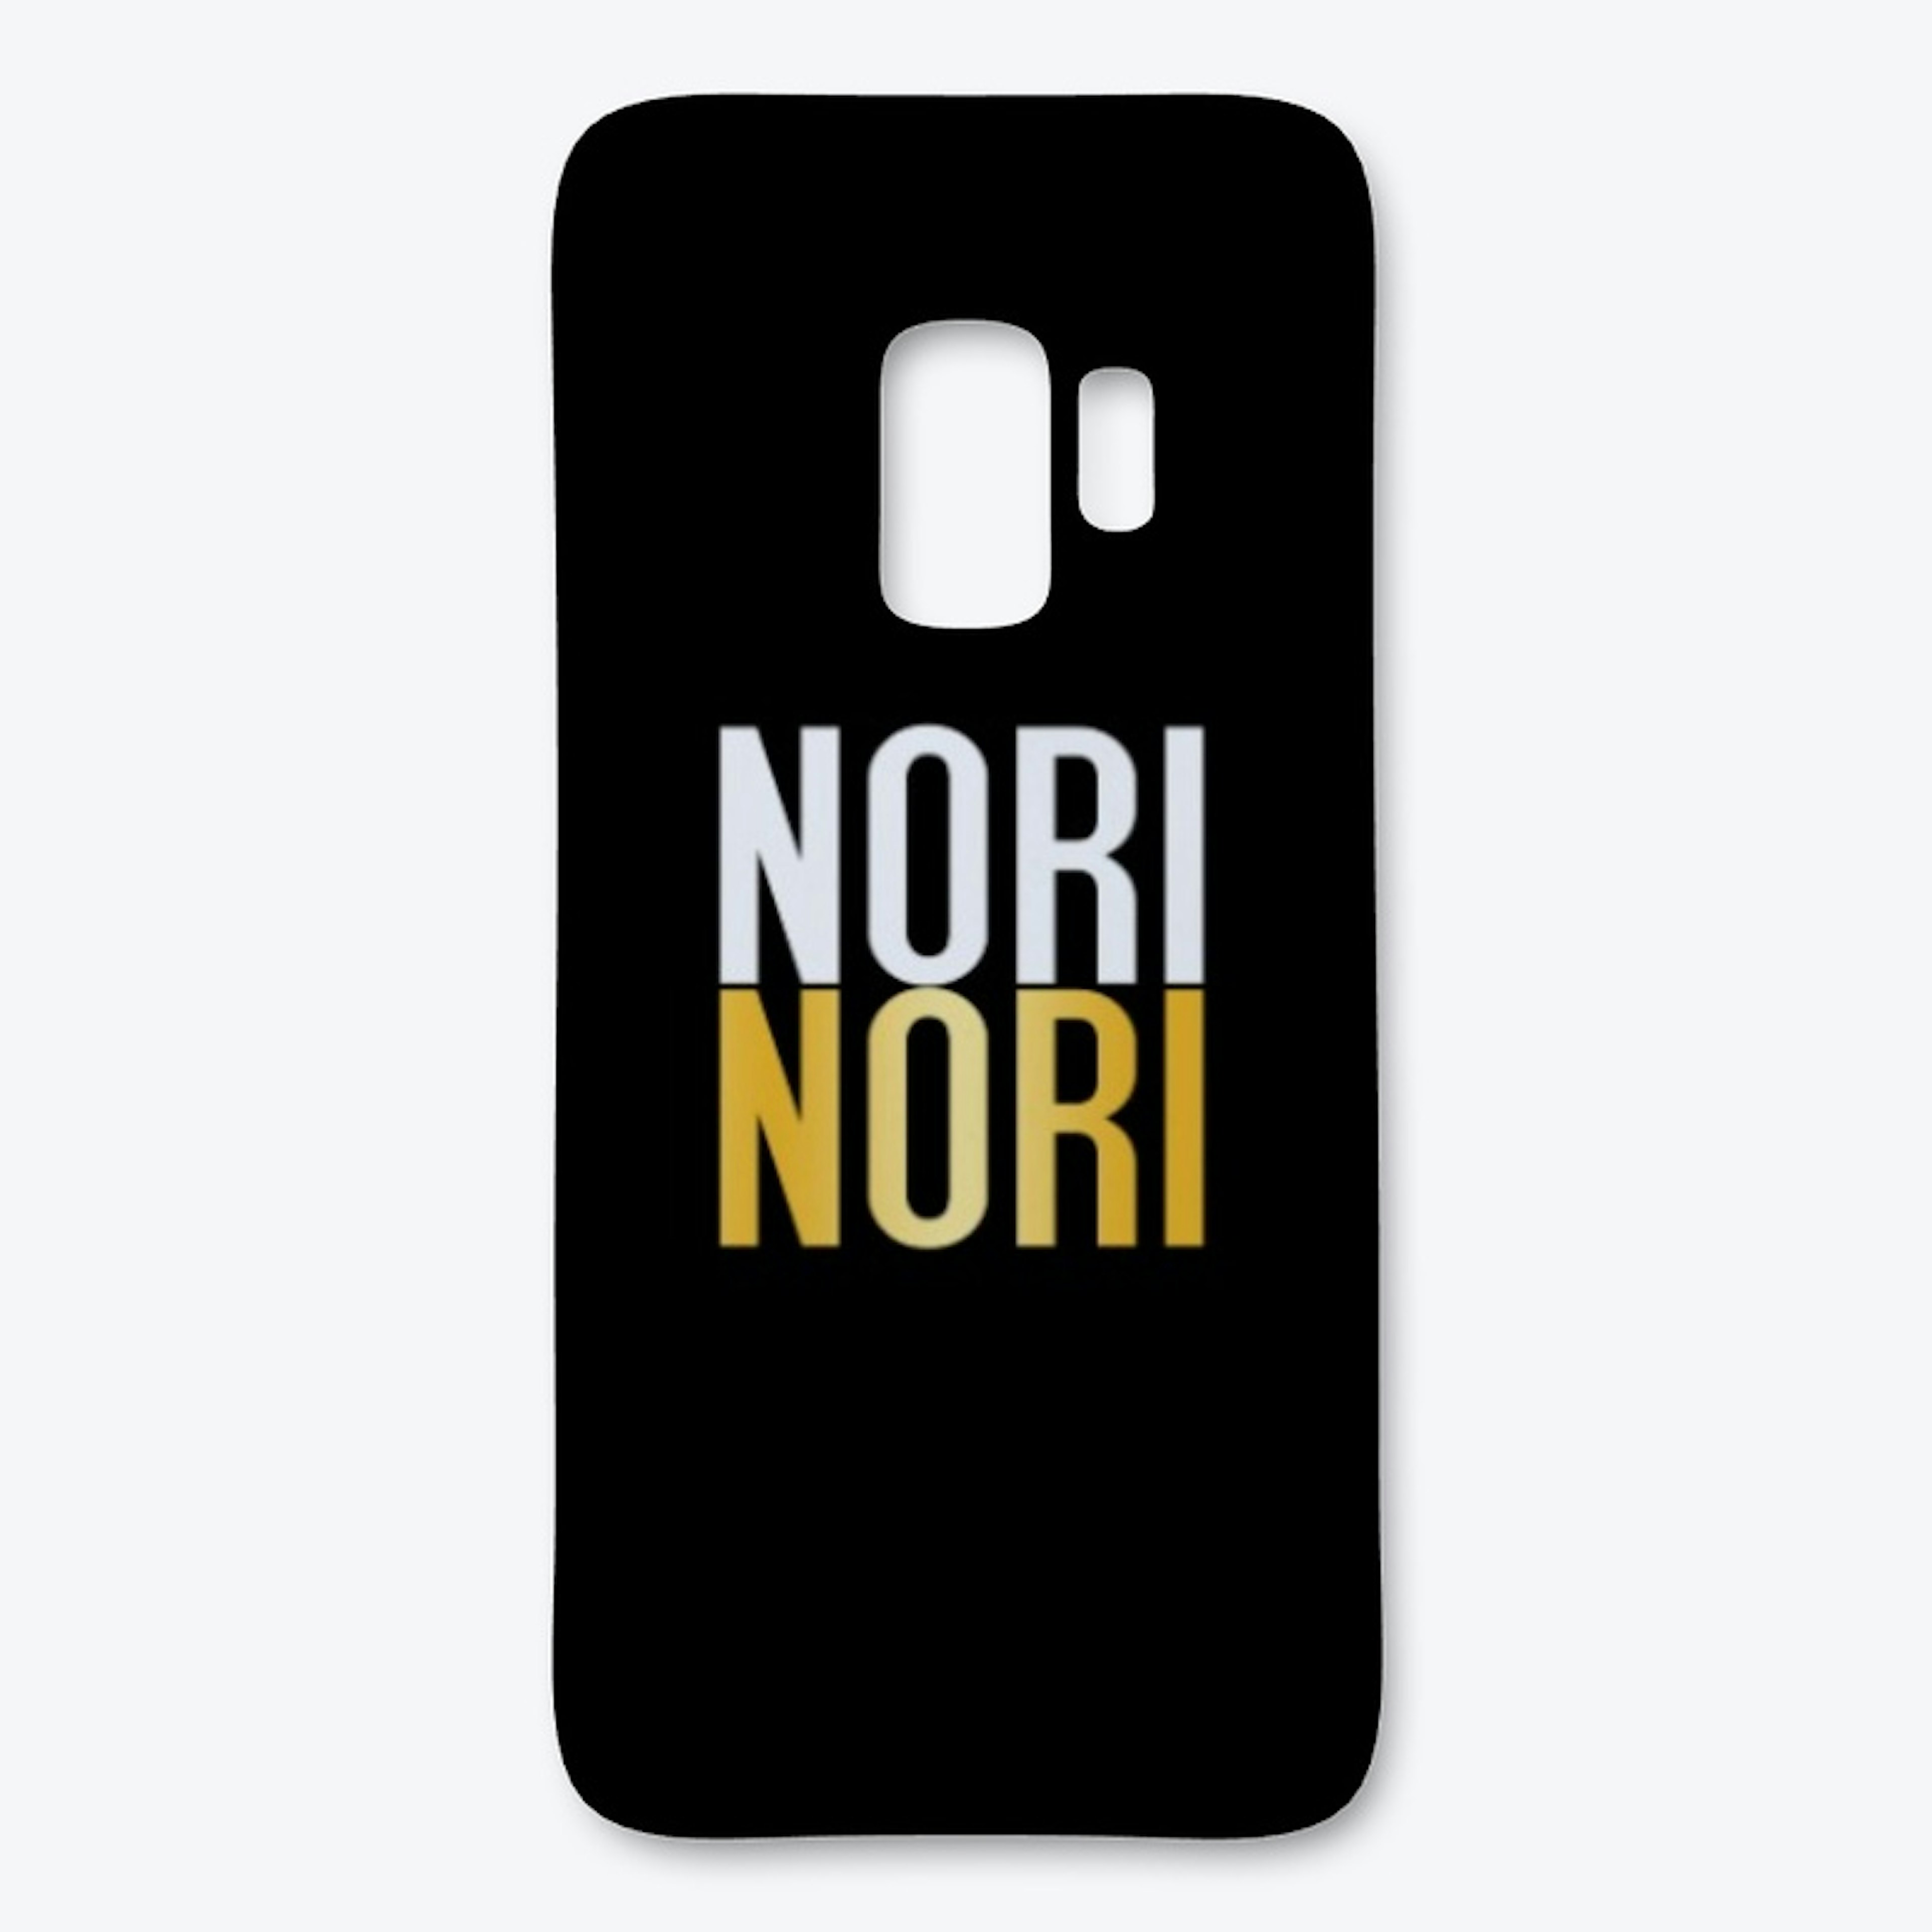 Nori Nori Fun Designs